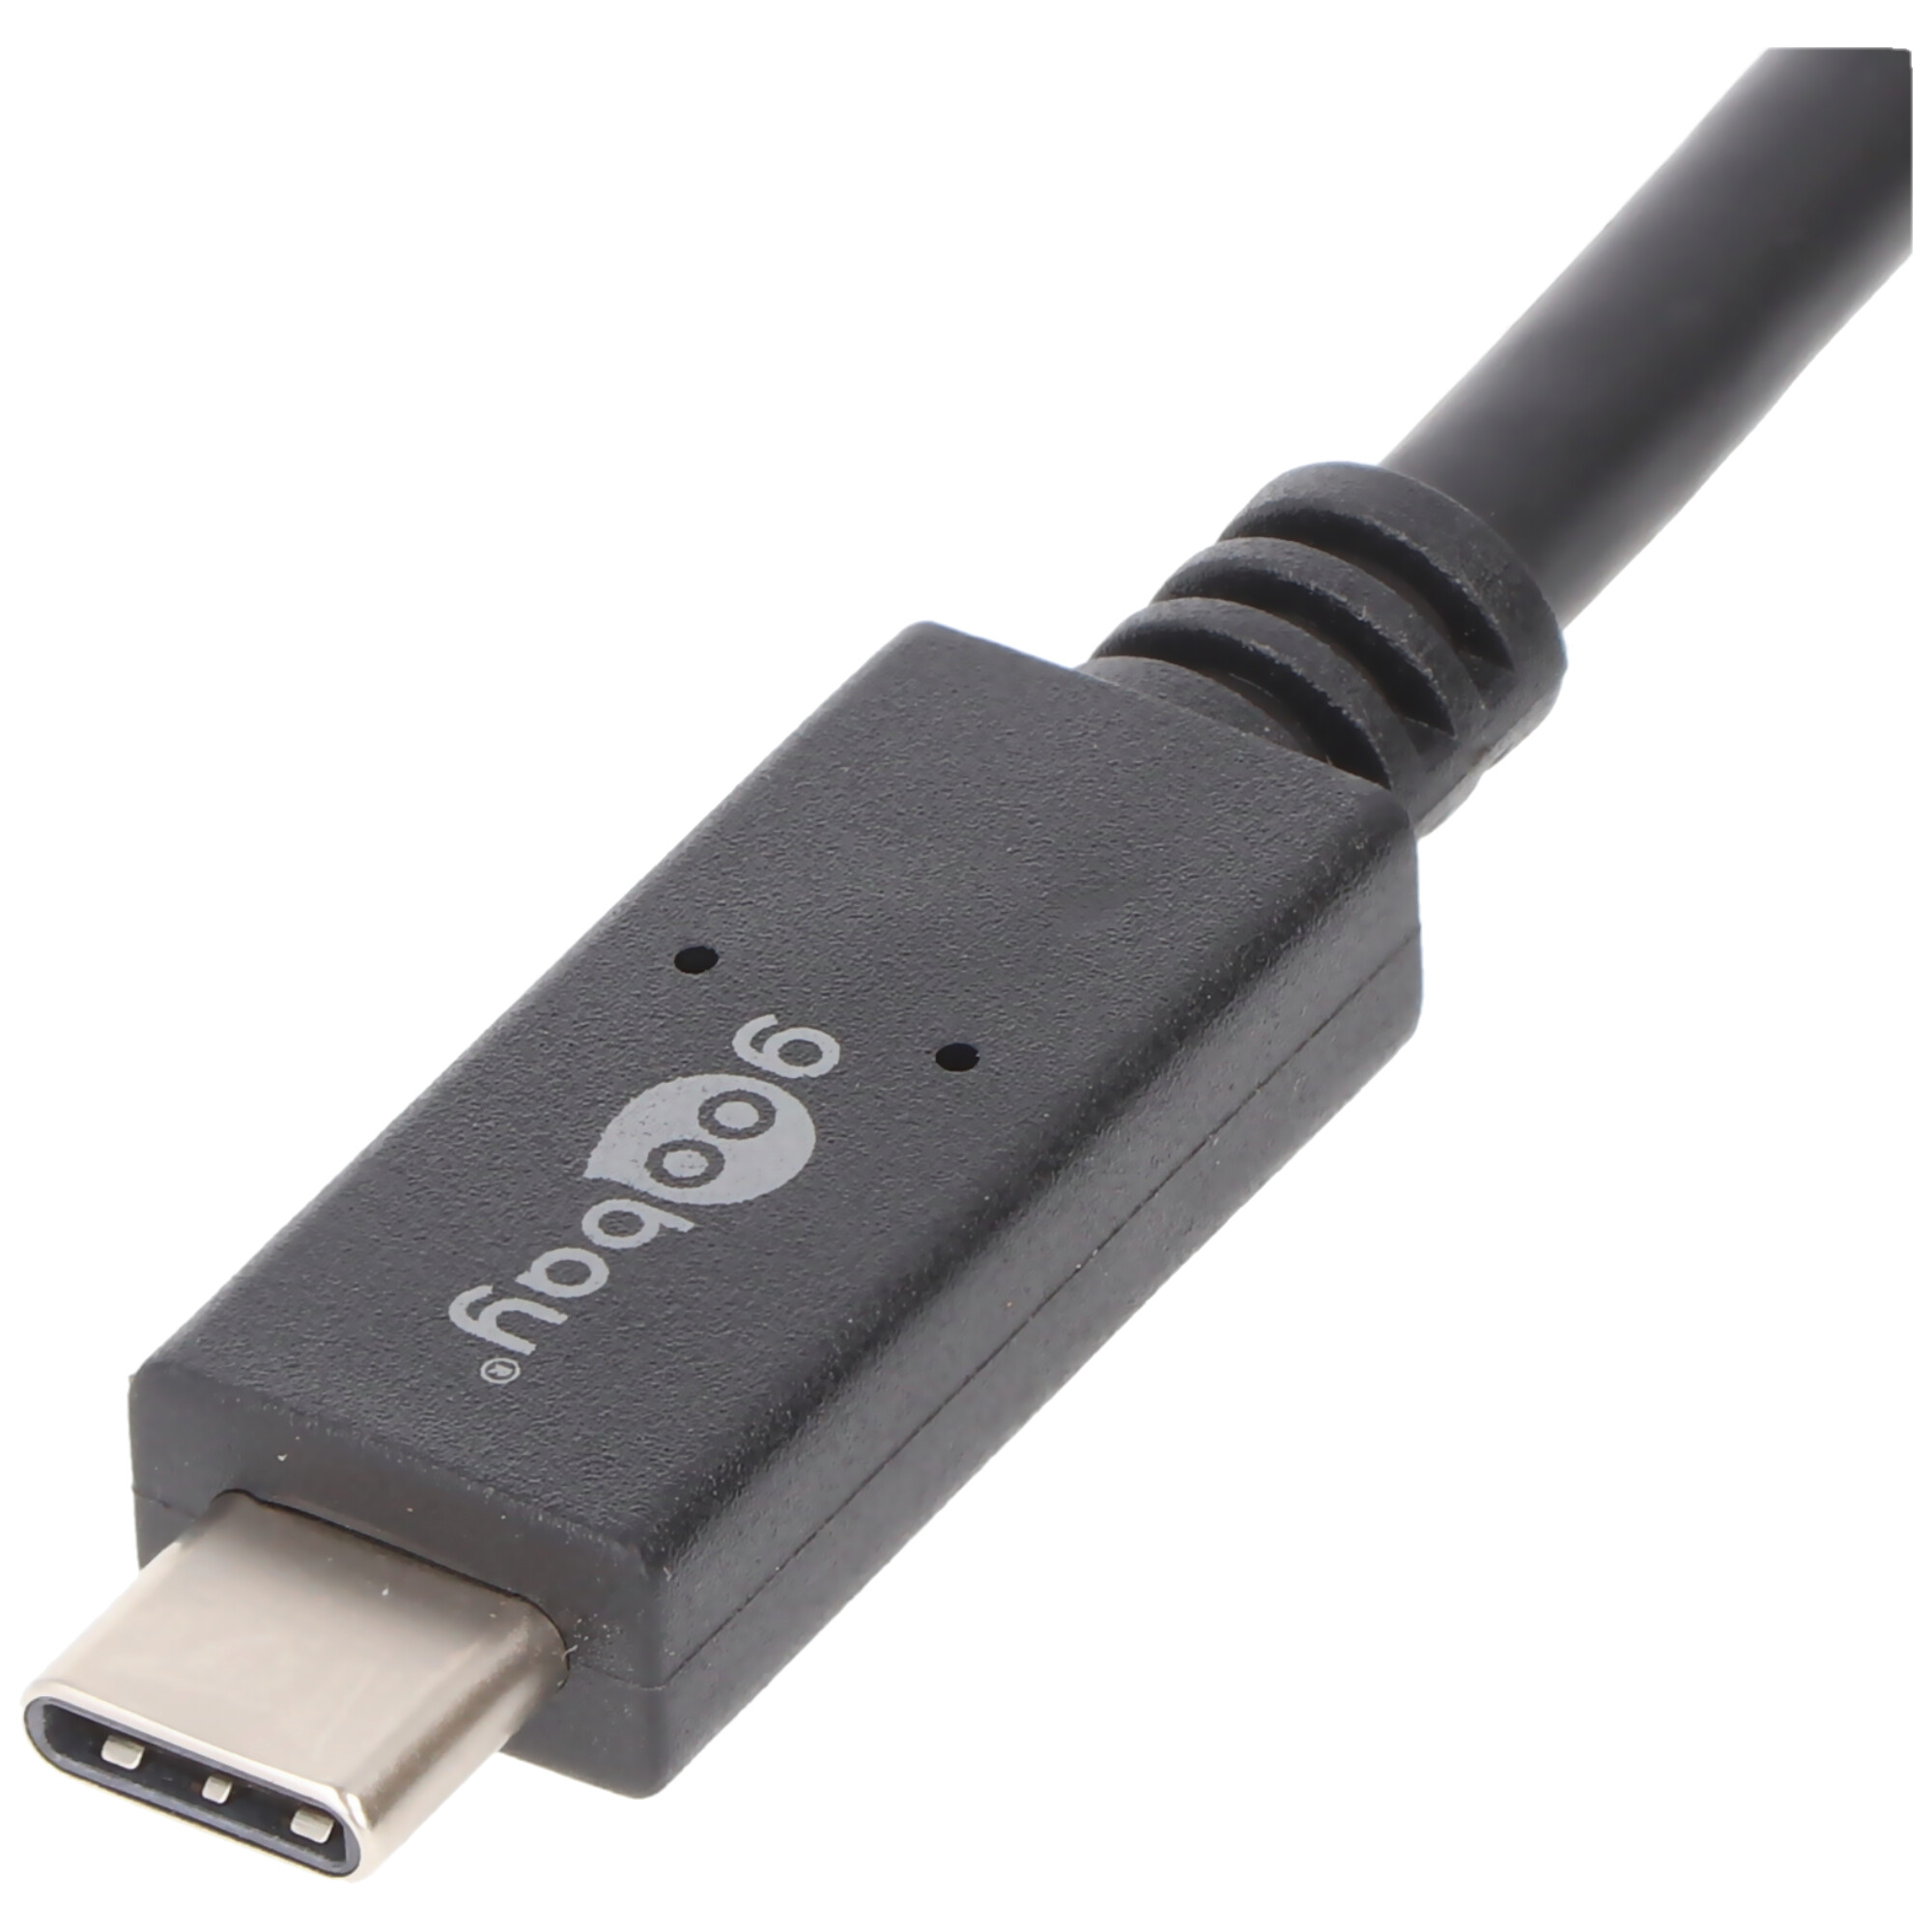 USB-C Lade- und Synchronisationskabel USB 3.1 Generation 2 für alle Geräte mit USB-C Anschluss, 1 Meter schwarz, 3A